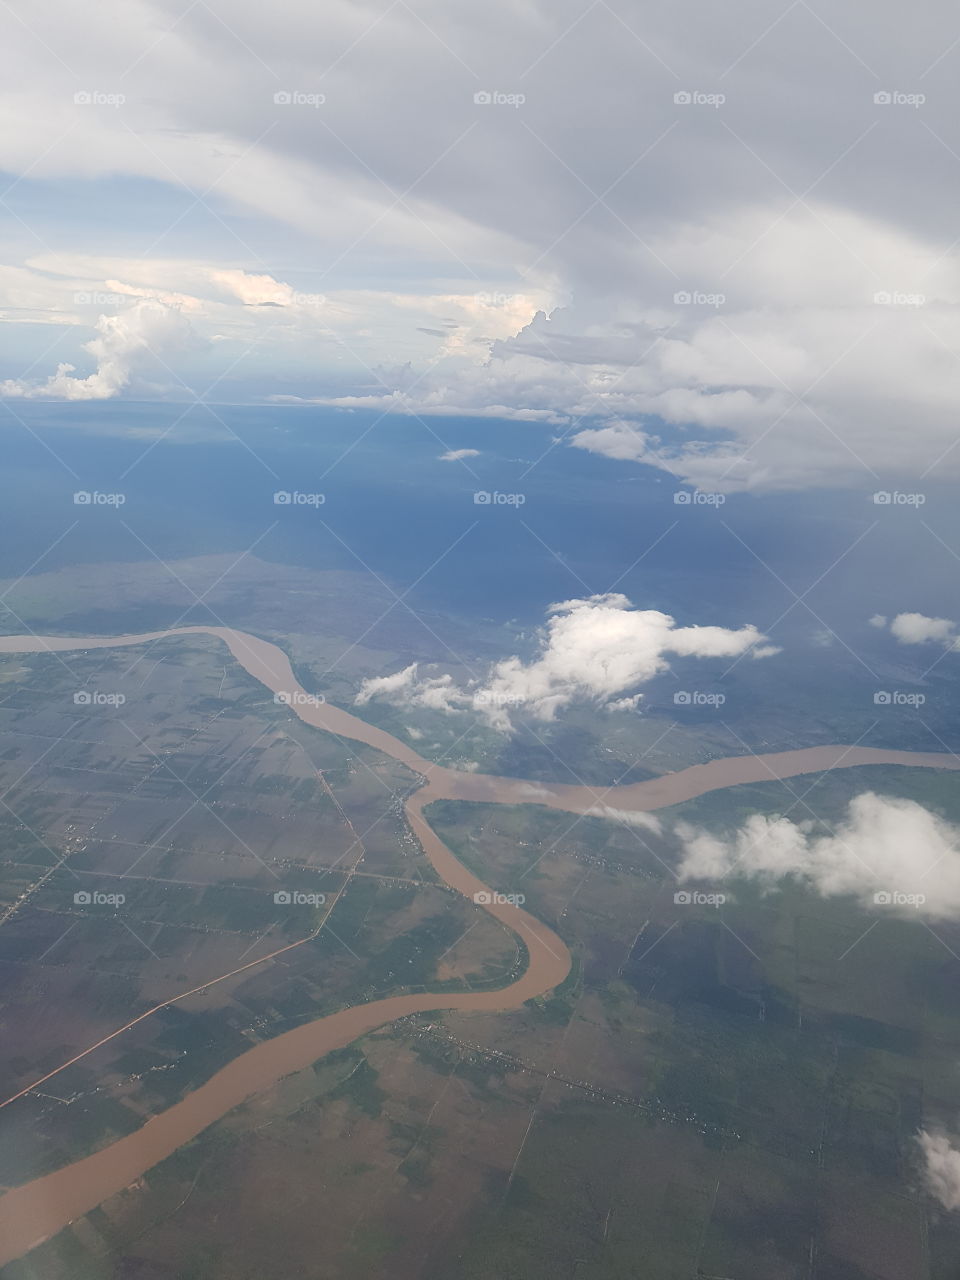 Batanghari River